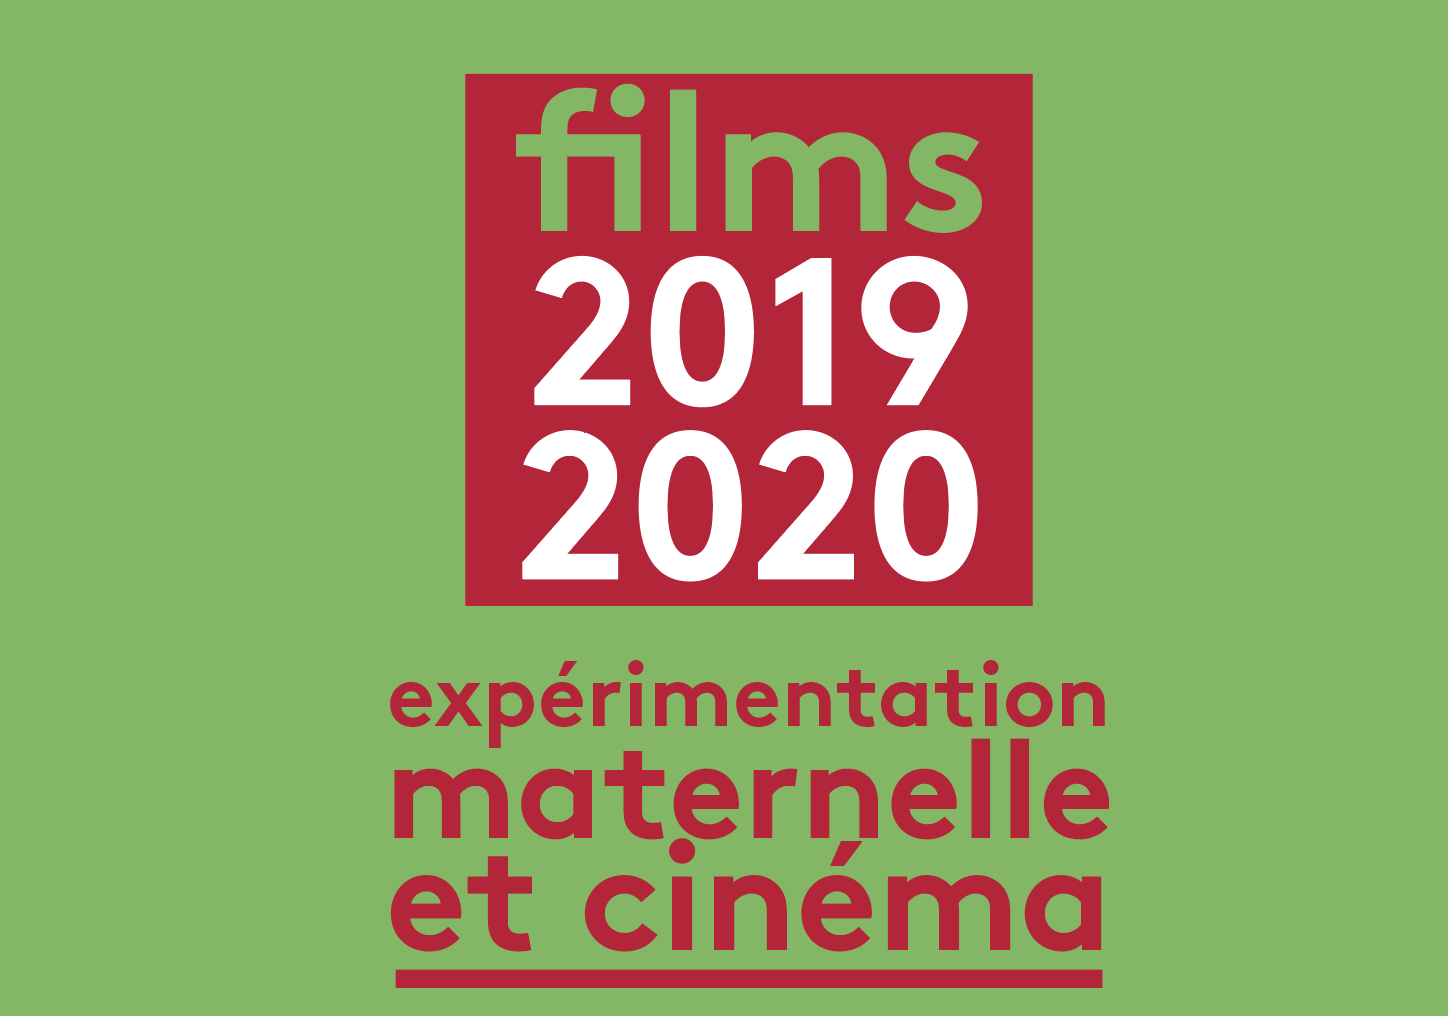 Liste des films Maternelle 2019-2020